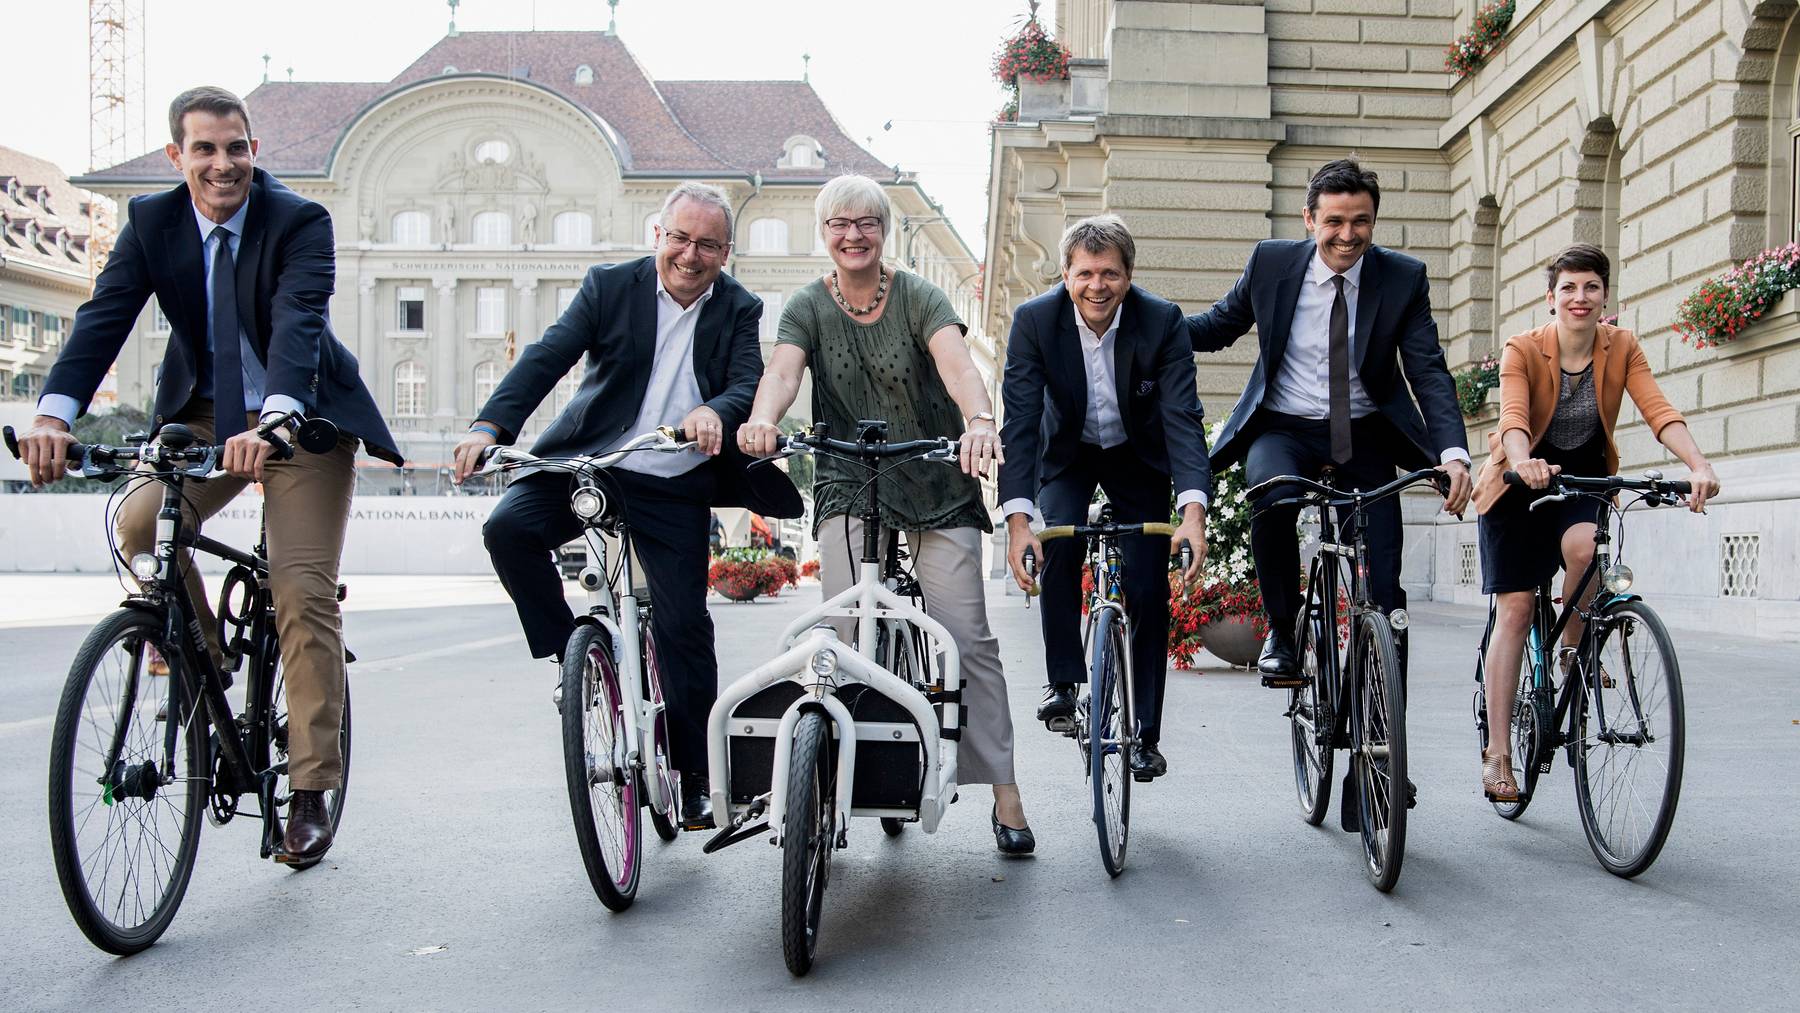 Fährt ohne Helm Velo und fordert dass dies auch für E-Bikefahrer so bleibt: IG-Velo-Präsident und Nationalrat Matthias Aebischer (2. v.r.).